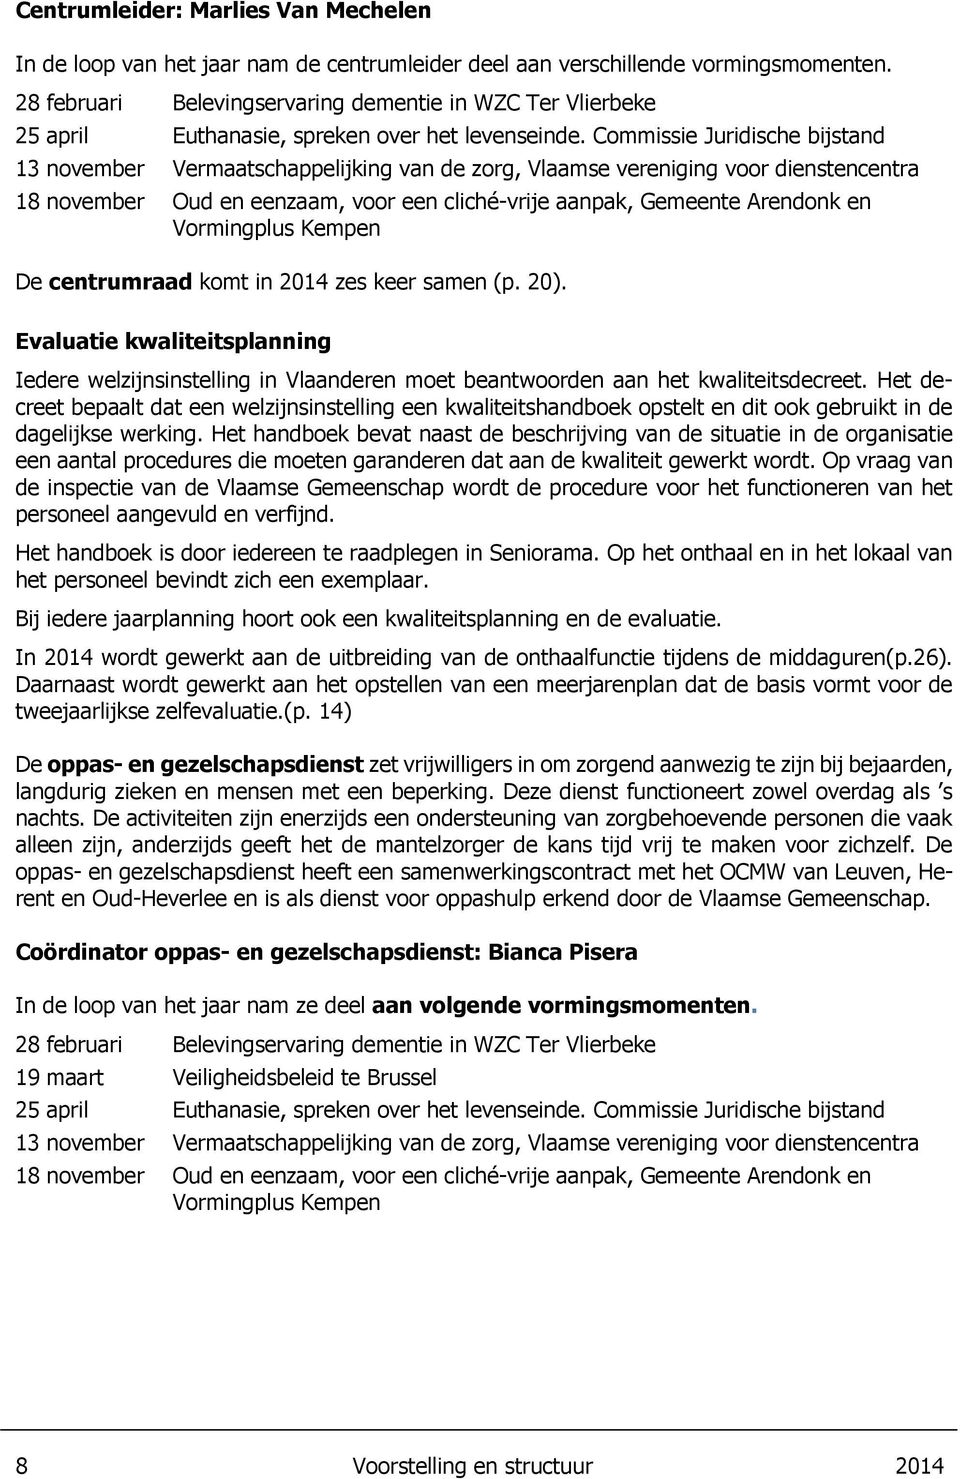 Commissie Juridische bijstand 13 november Vermaatschappelijking van de zorg, Vlaamse vereniging voor dienstencentra 18 november Oud en eenzaam, voor een cliché-vrije aanpak, Gemeente Arendonk en